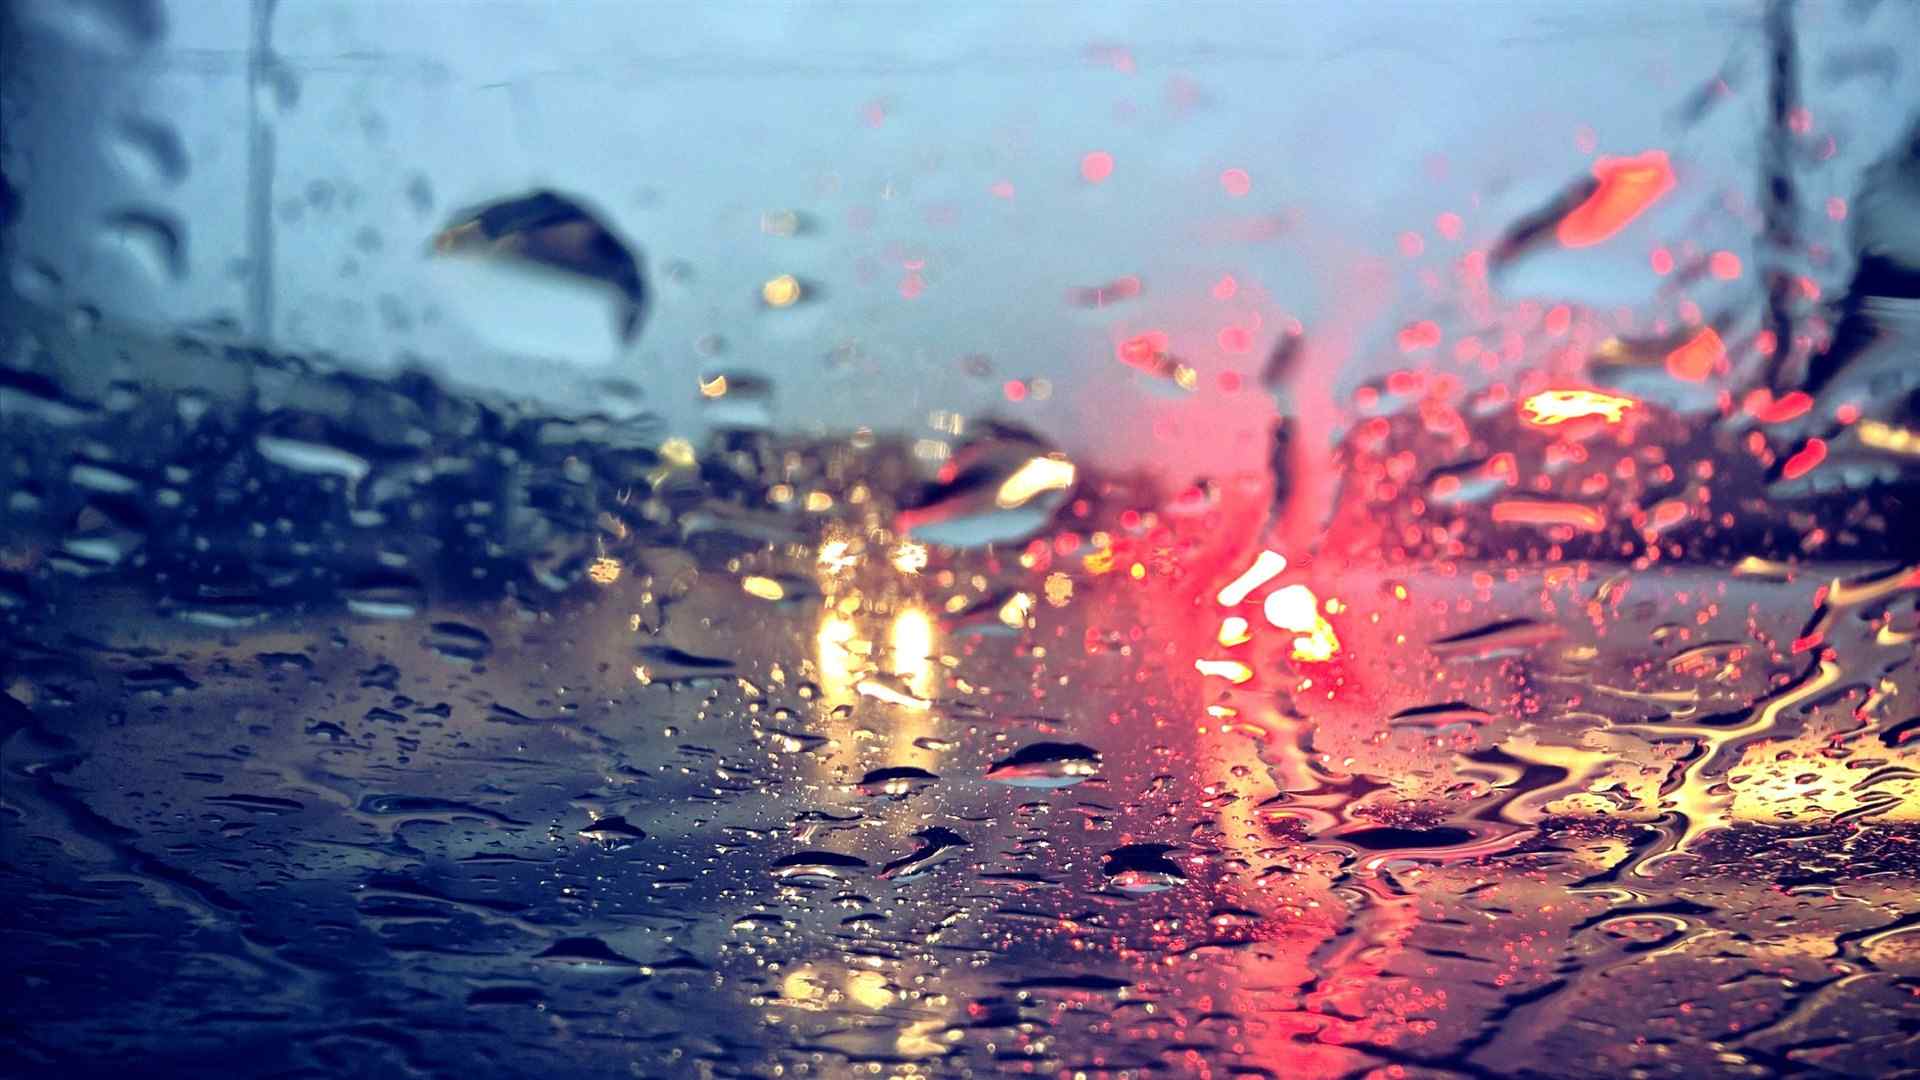 窗户上滑落的雨滴唯美图片桌面壁纸